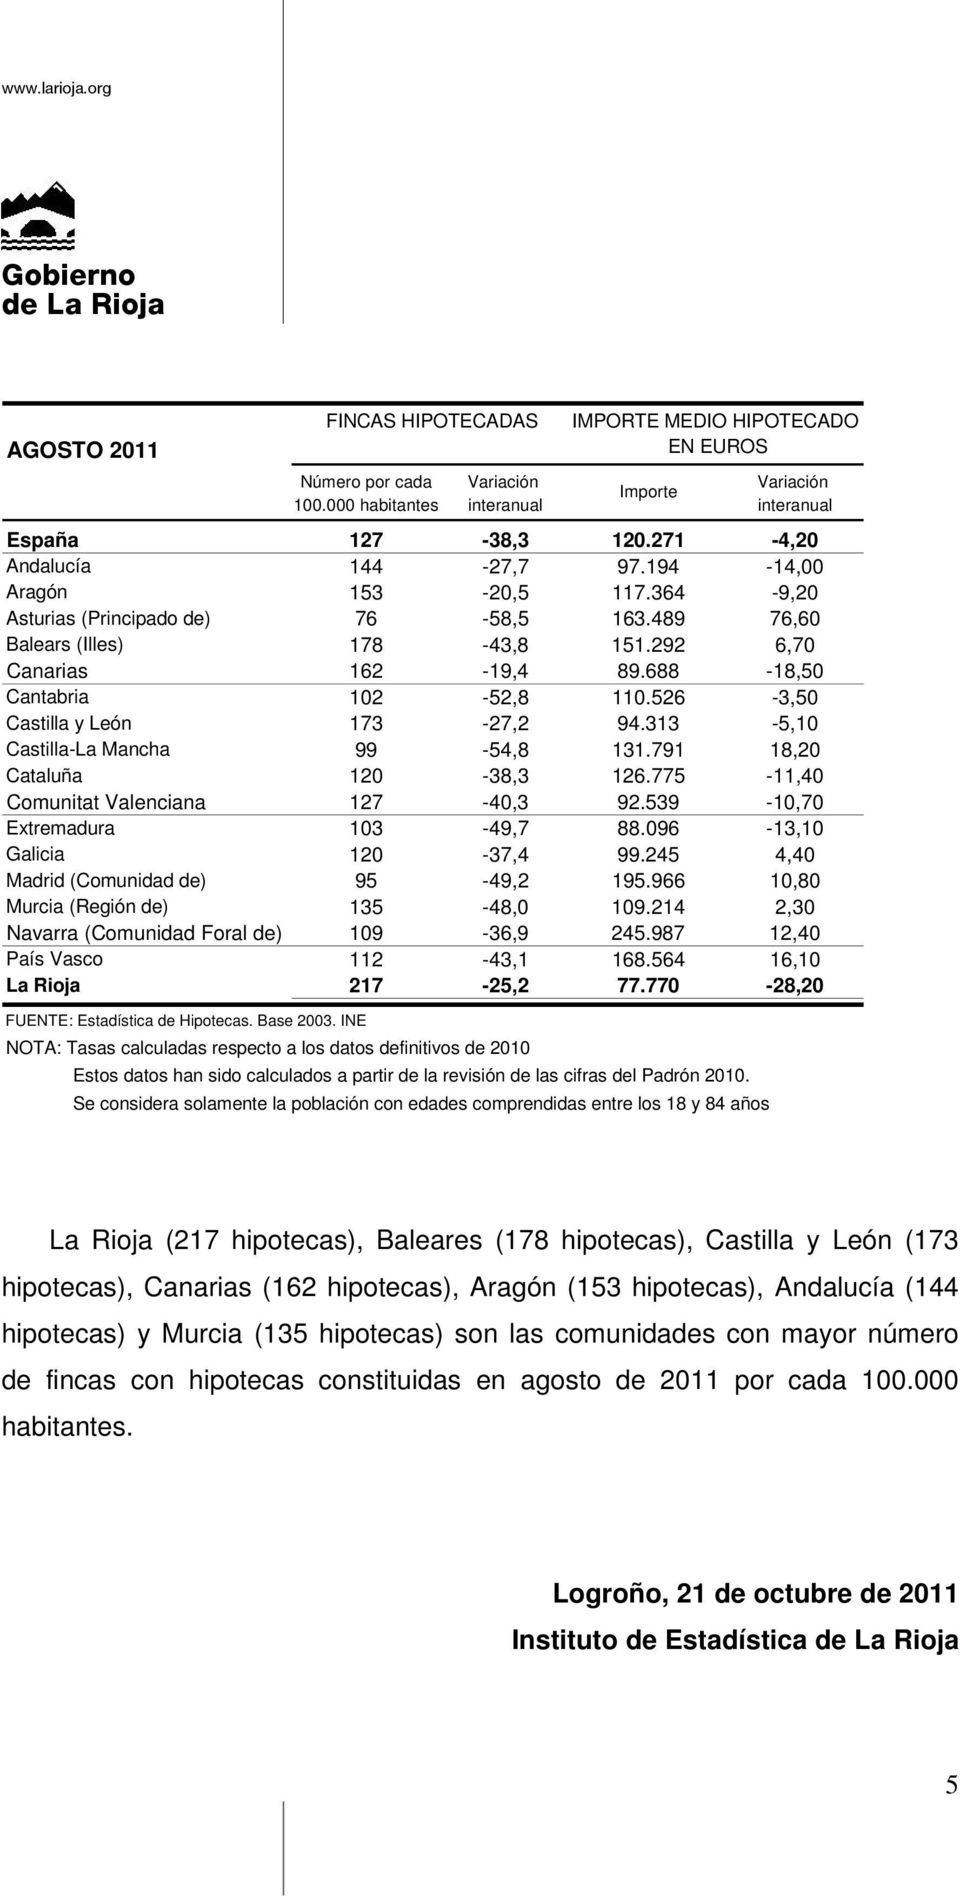 688-18,50 Cantabria 102-52,8 110.526-3,50 Castilla y León 173-27,2 94.313-5,10 Castilla-La Mancha 99-54,8 131.791 18,20 Cataluña 120-38,3 126.775-11,40 Comunitat Valenciana 127-40,3 92.